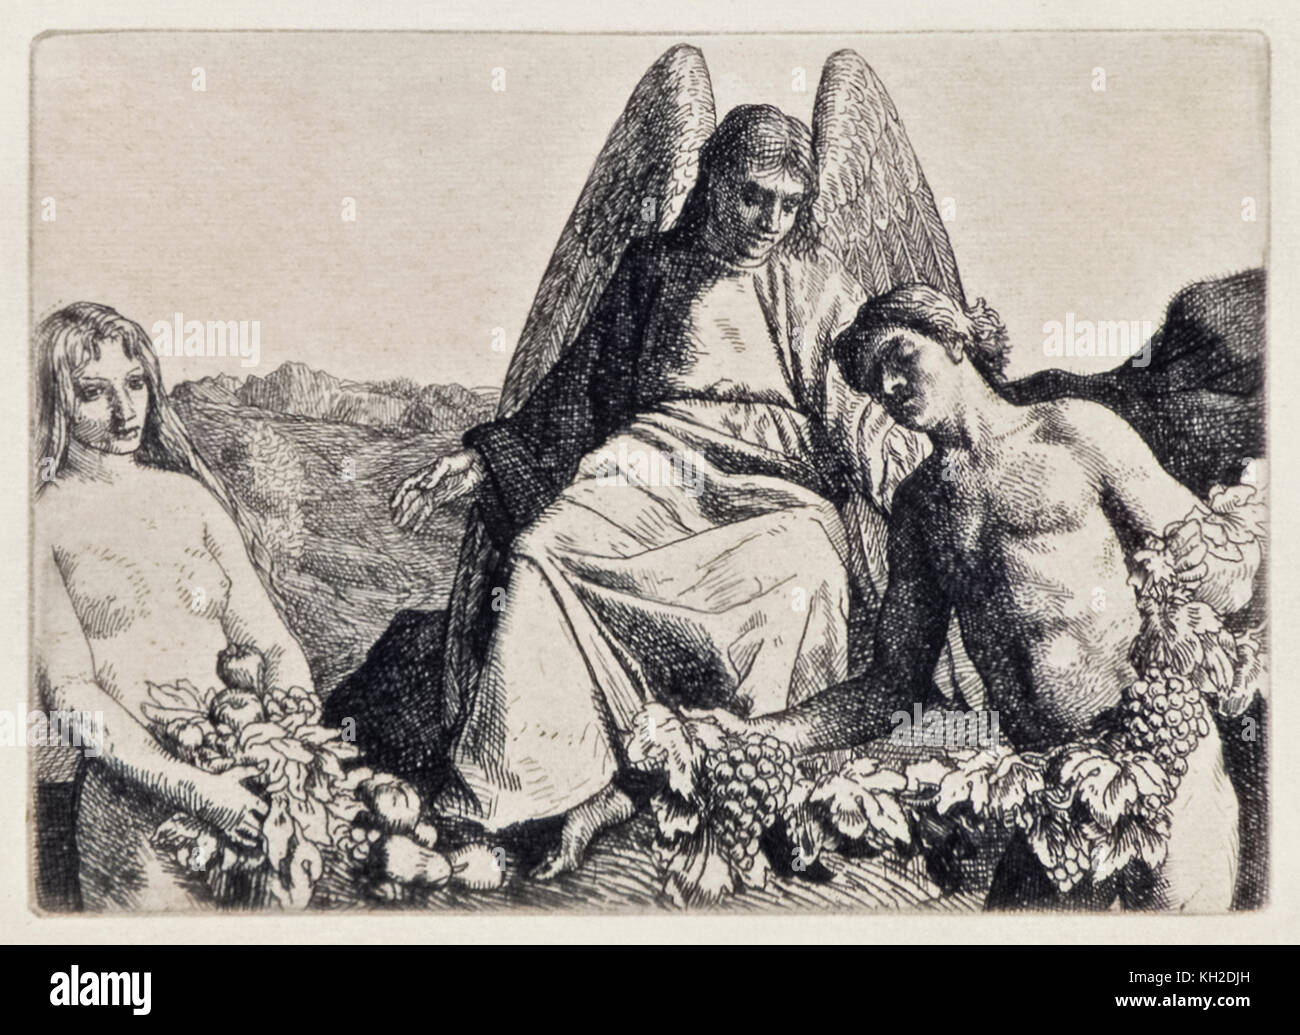 'Adam et Eve Répondre Raphael' de 'Paradis perdu' de John Milton (1608-1674) une série de 12 illustrations gravées par William Strang (1859-1921). Voir plus d'informations ci-dessous. Banque D'Images